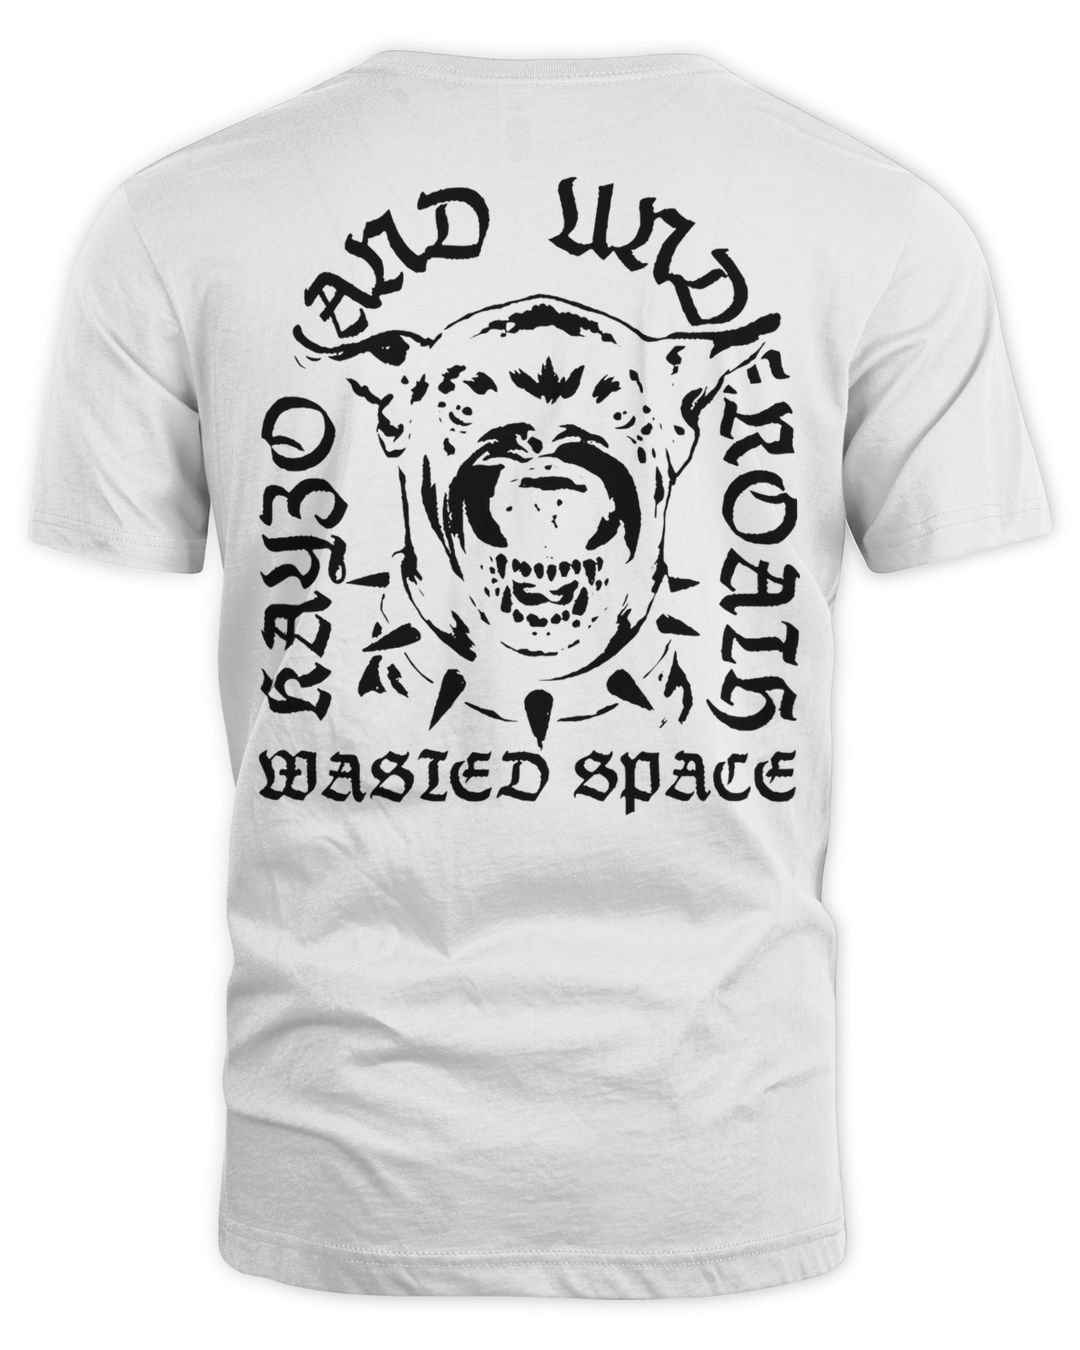 Kayzo Merch Wasted Space Shirt